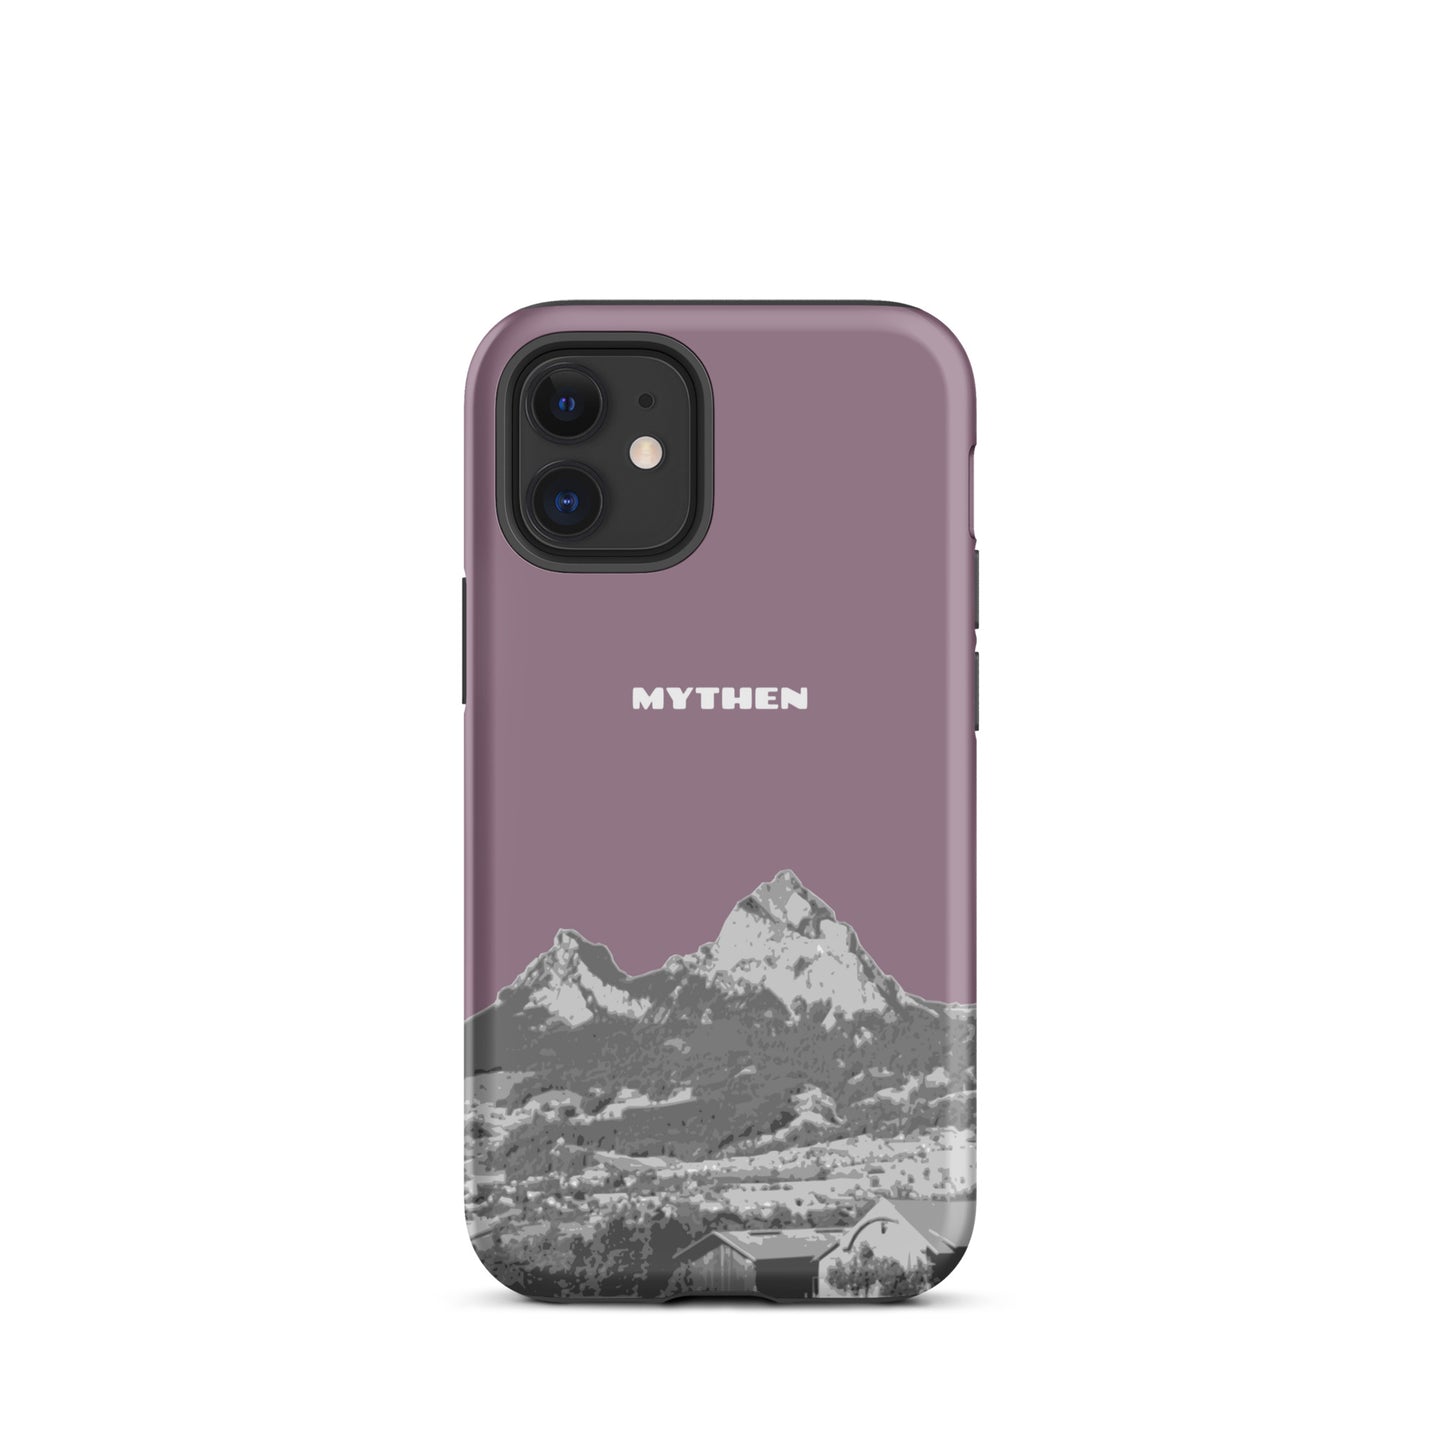 Hülle für das iPhone 12 mini von Apple in der Farbe Pastellviolett, die den Grossen Mythen und den Kleinen Mythen bei Schwyz zeigt. 